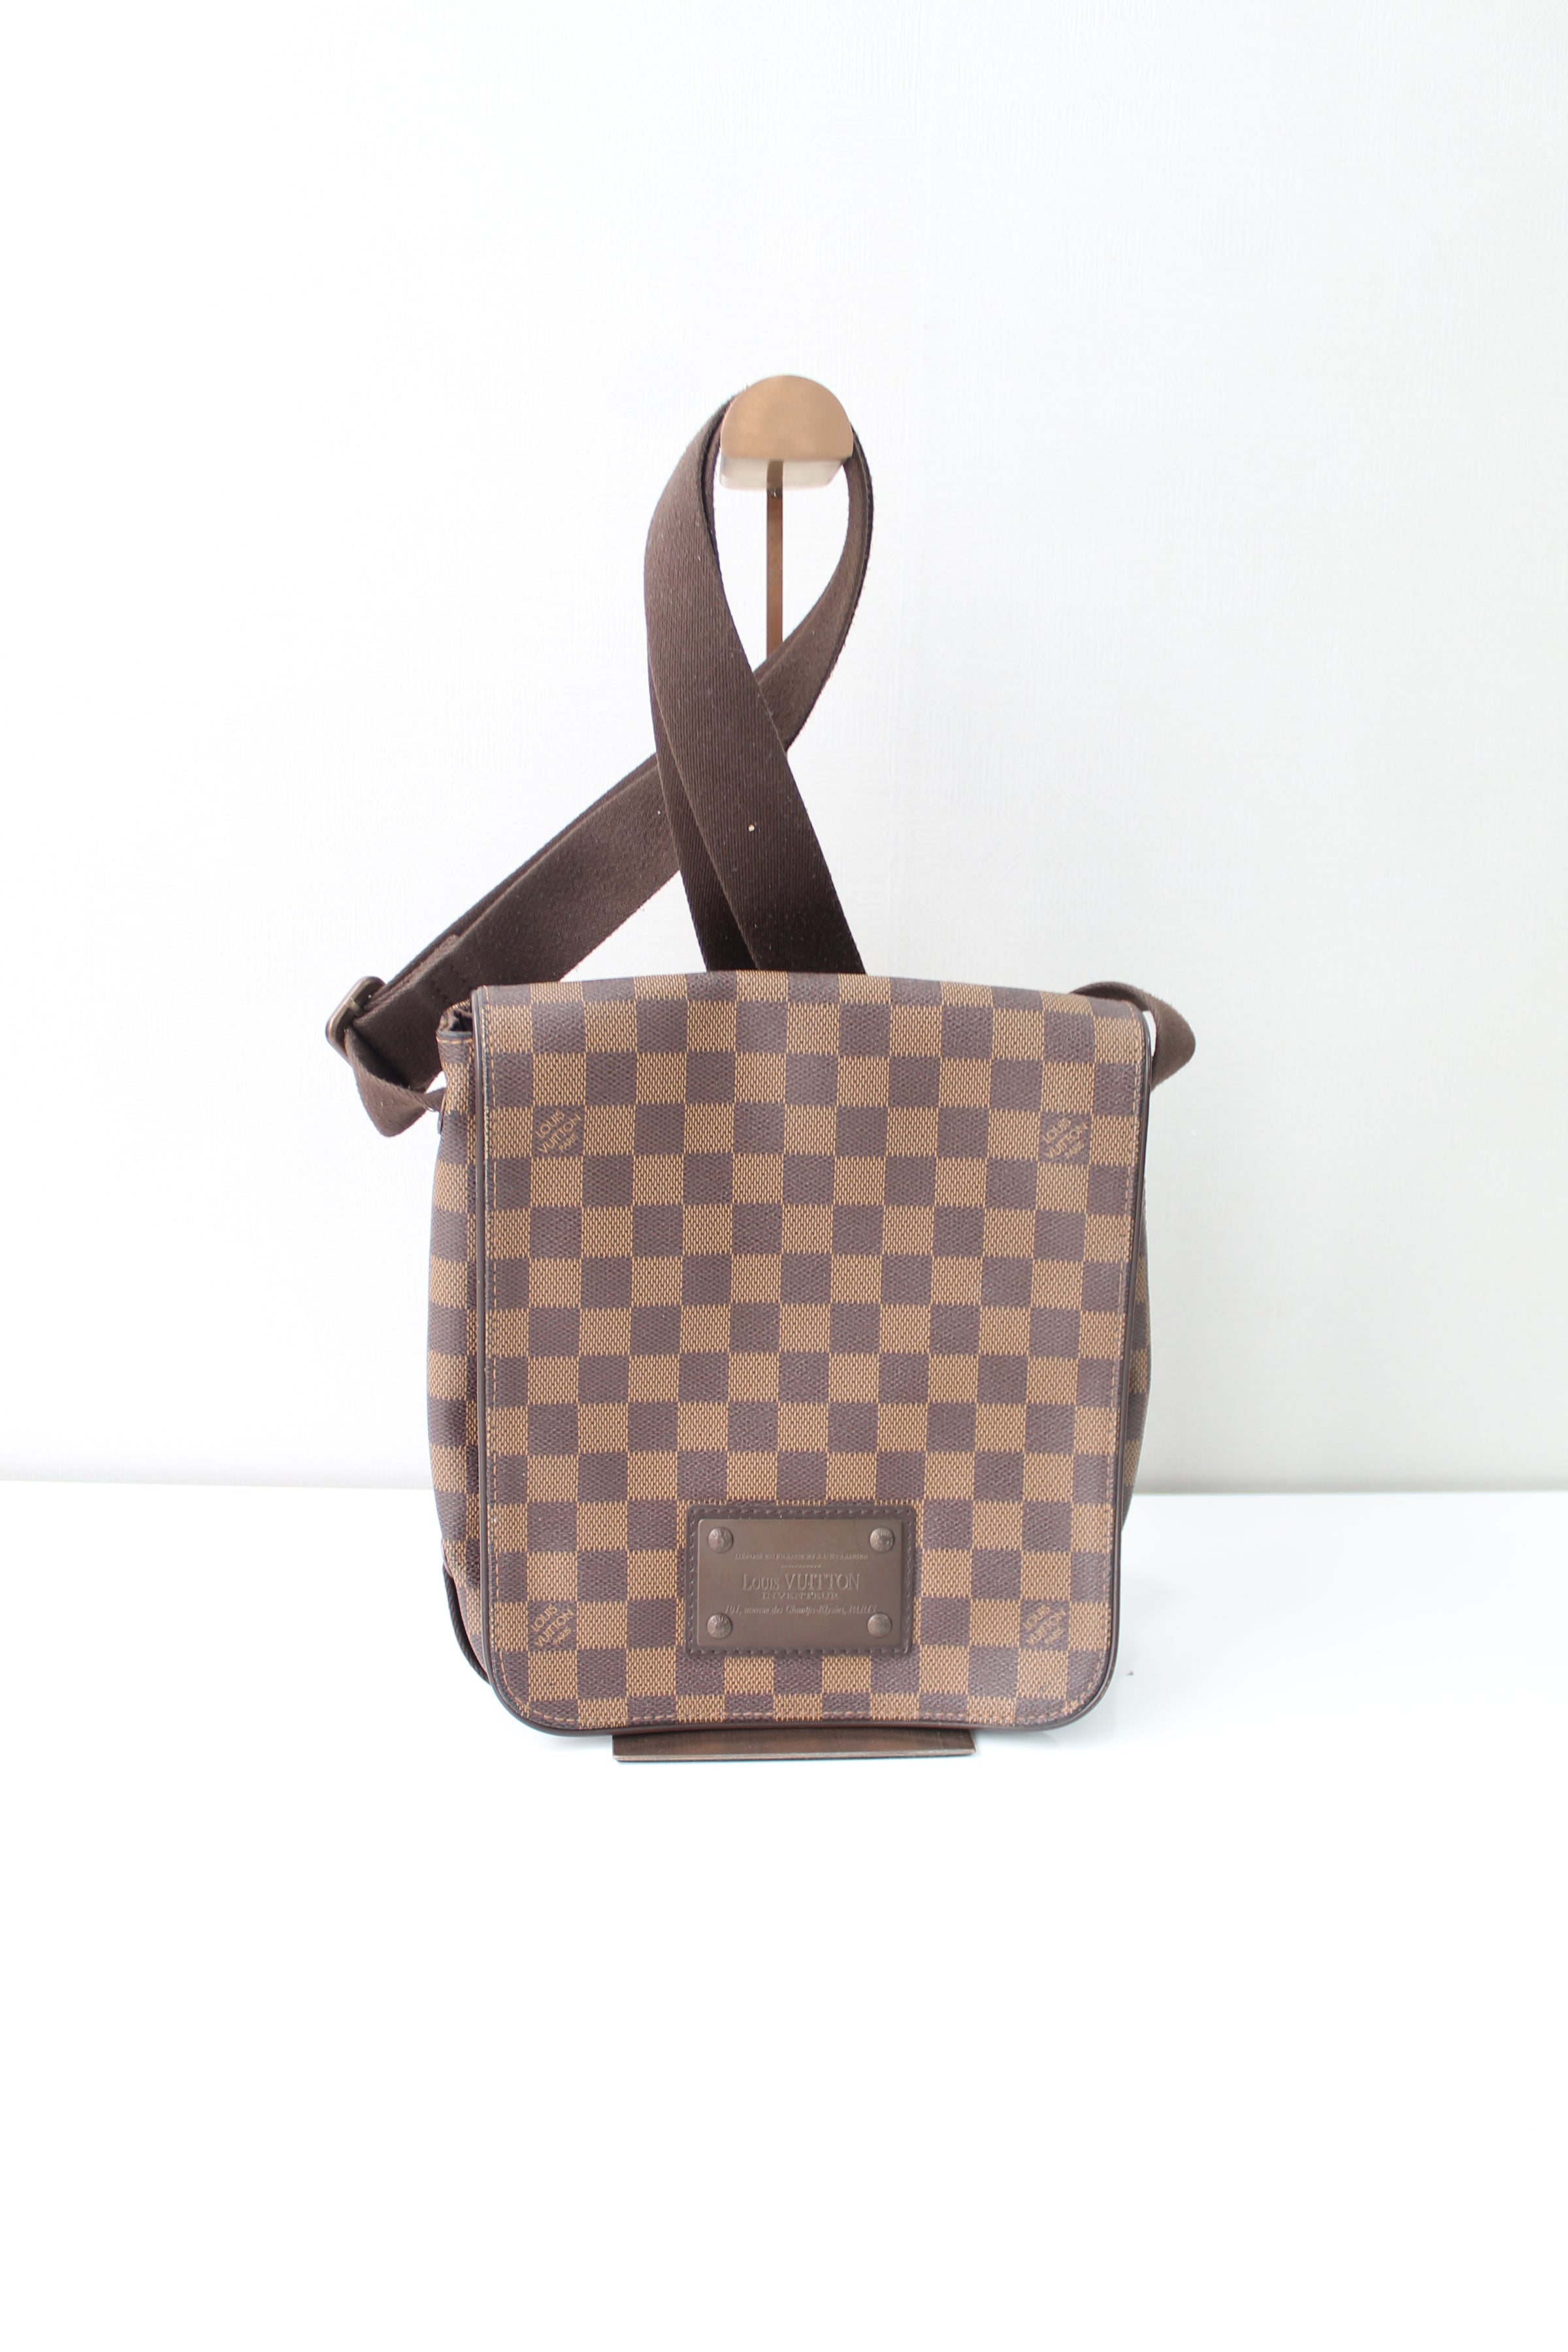 Louis Vuitton Damier Ebene Brooklyn Crossbody Messenger Flap Bag